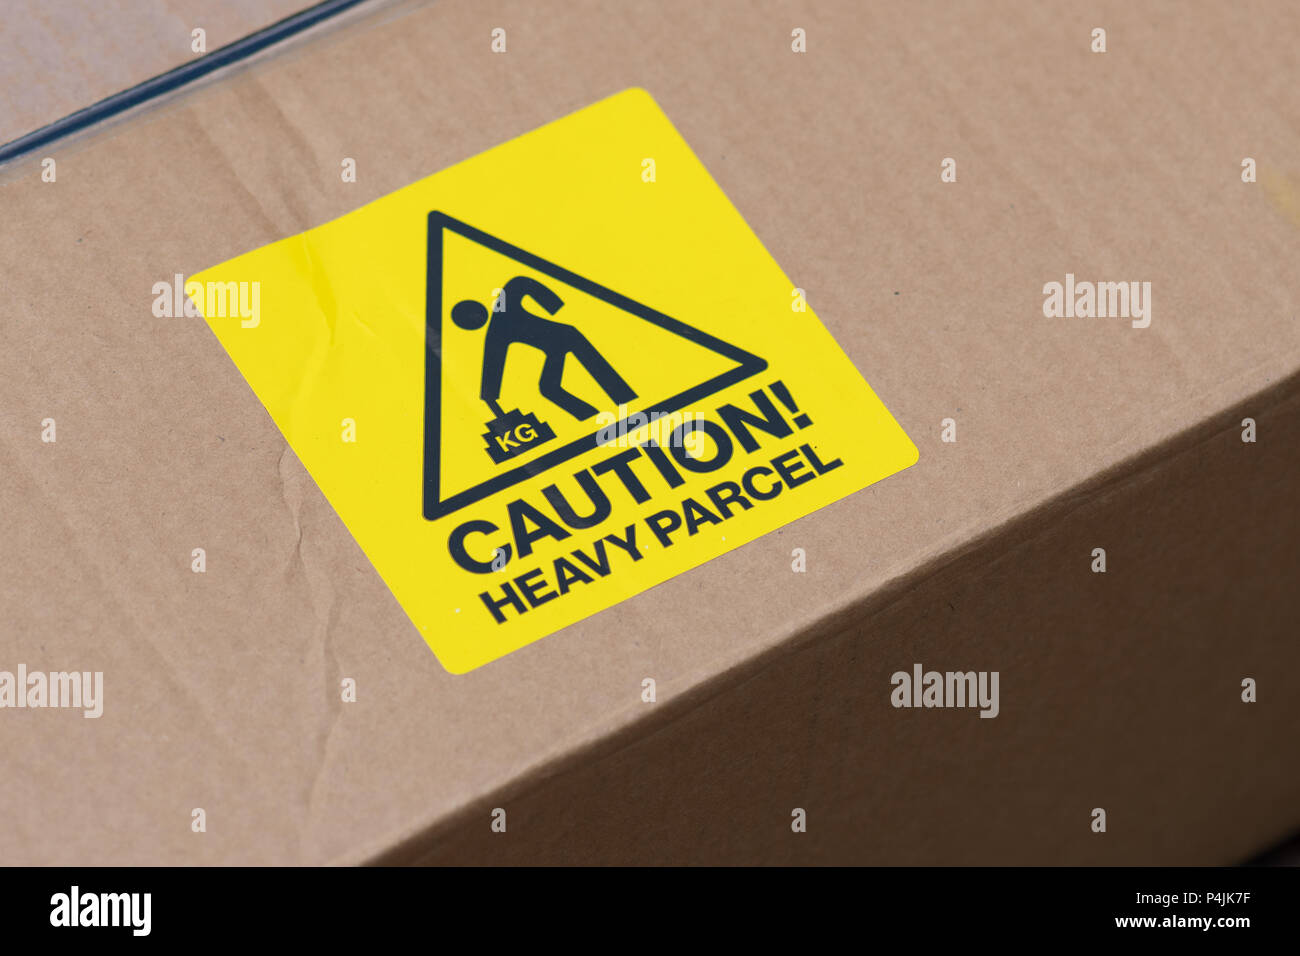 heavy parcel caution label Stock Photo